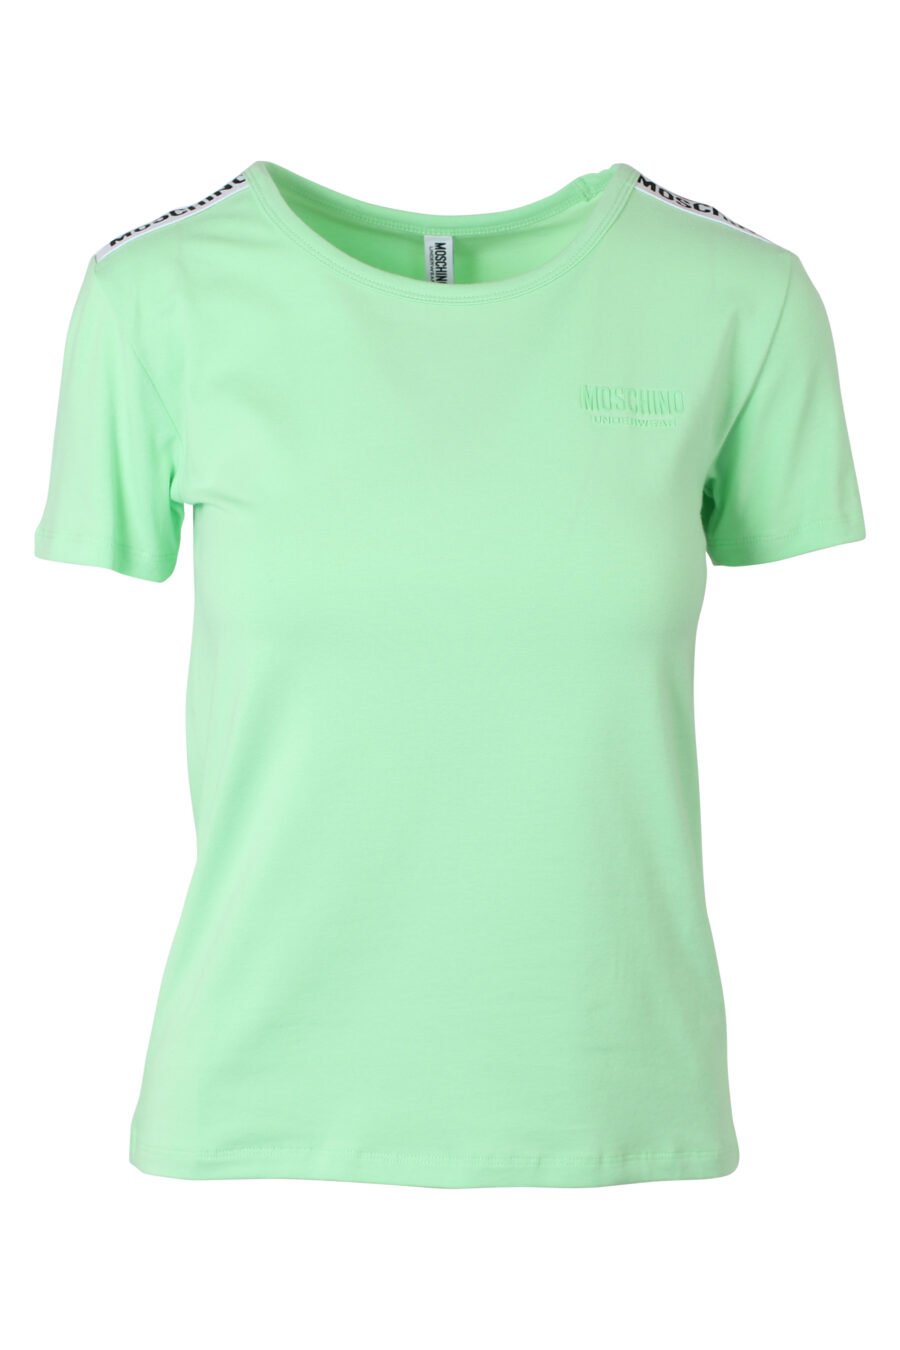 Camiseta verde menta slim fit con logo en cinta en hombros - IMG 9788